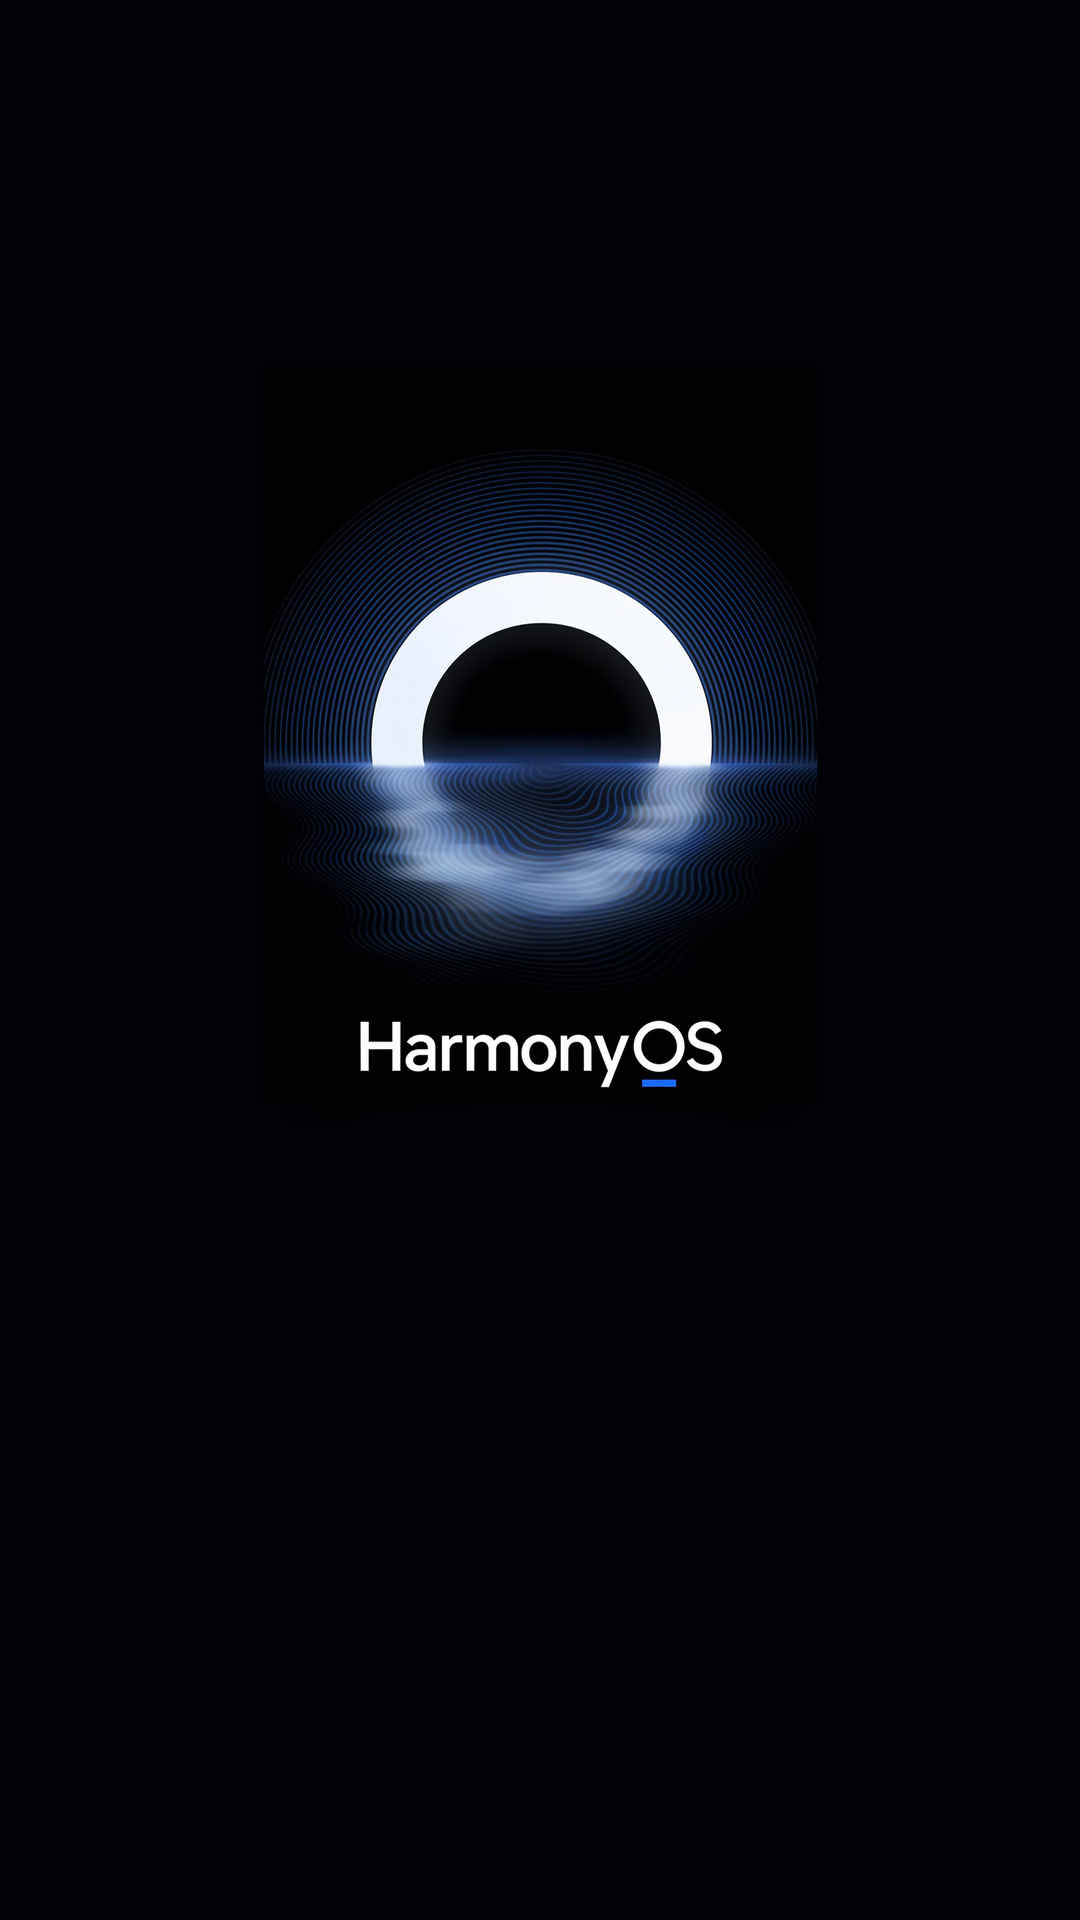 HarmonyOS 鸿蒙系统2160x3480手机壁纸-